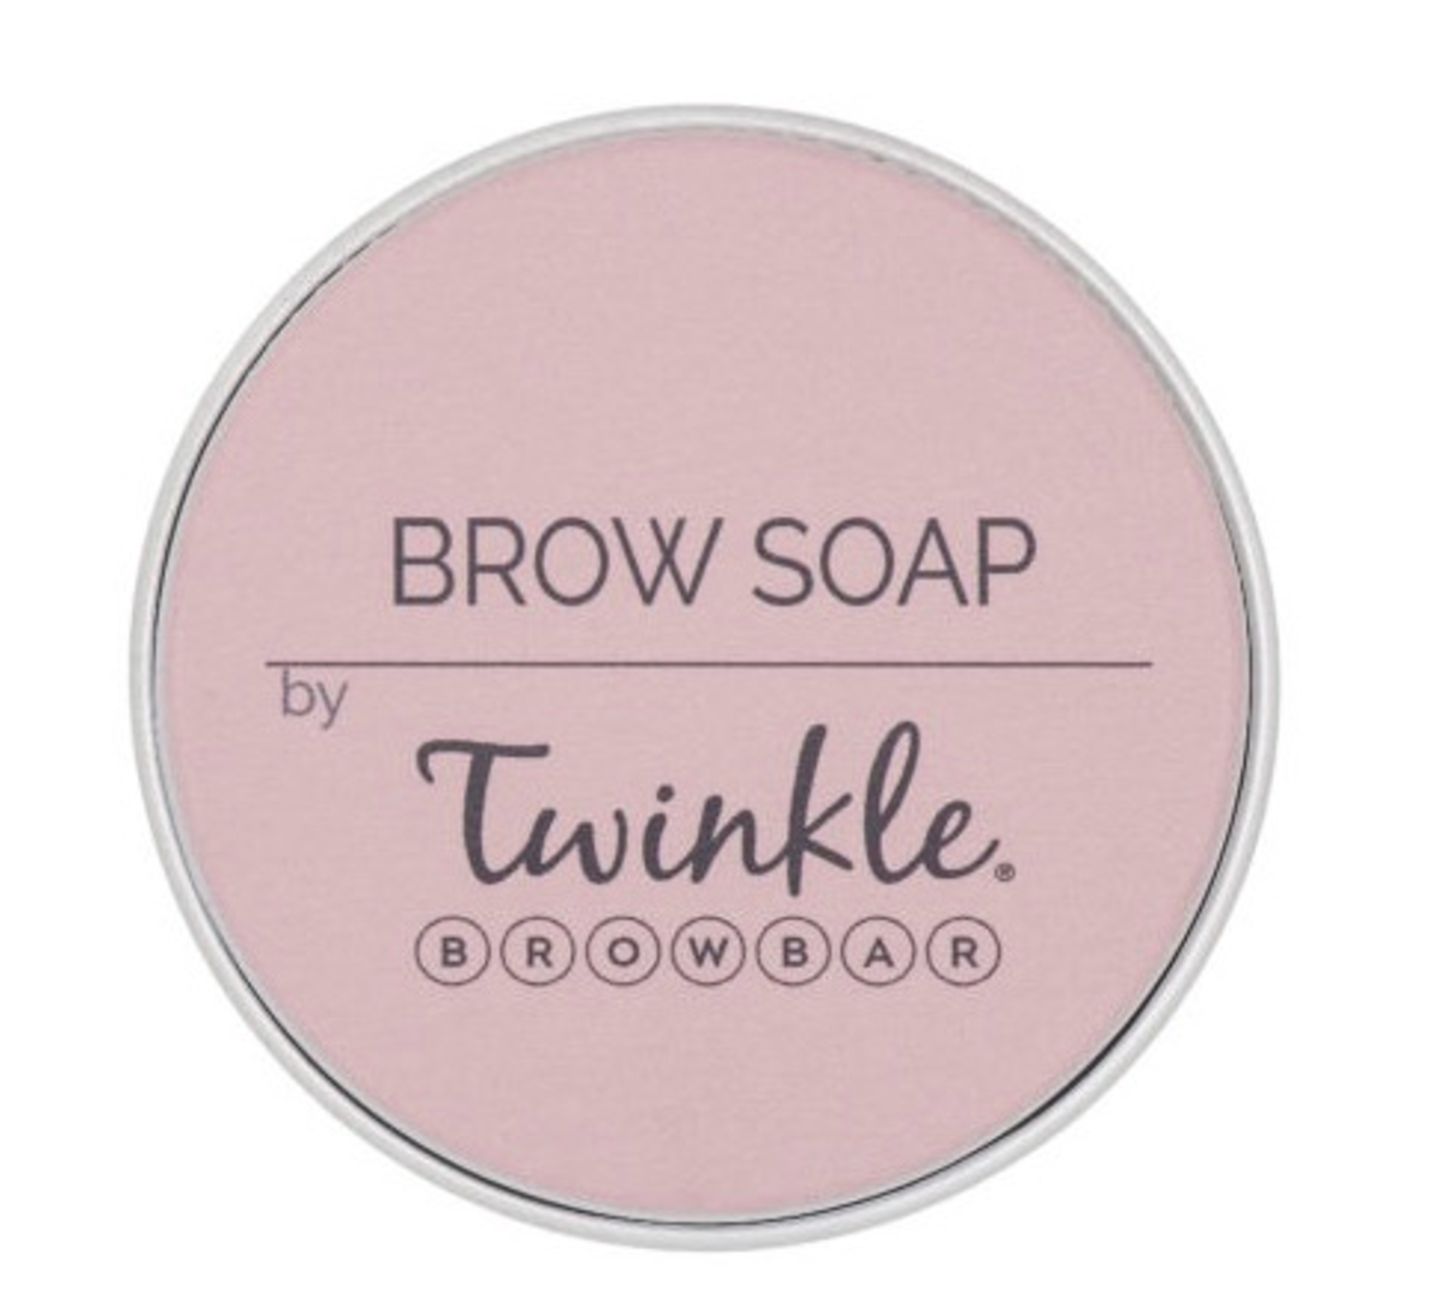 Neu in den Shops im Dezember: Twinkle Brow Soap